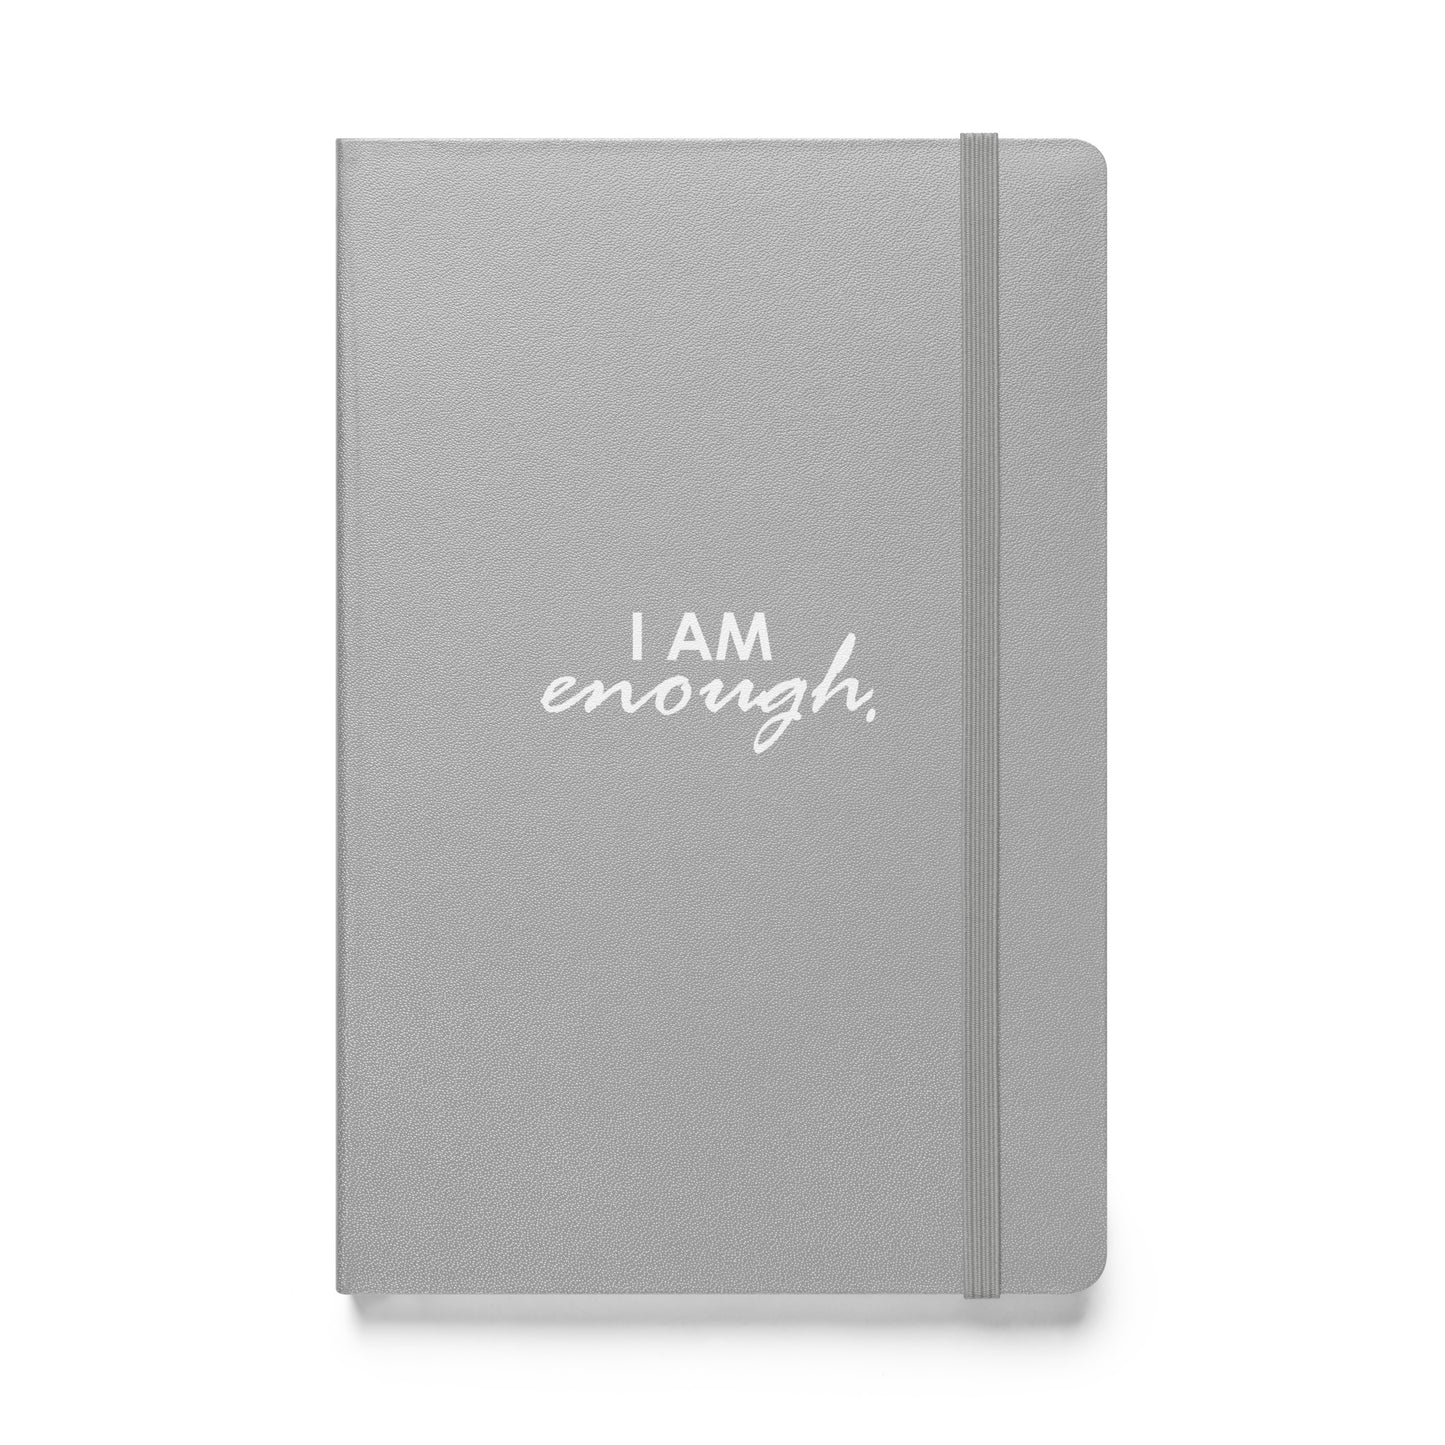 I AM ENOUGH - Hardcover bound notebook & FREE Affirmation Digital Download